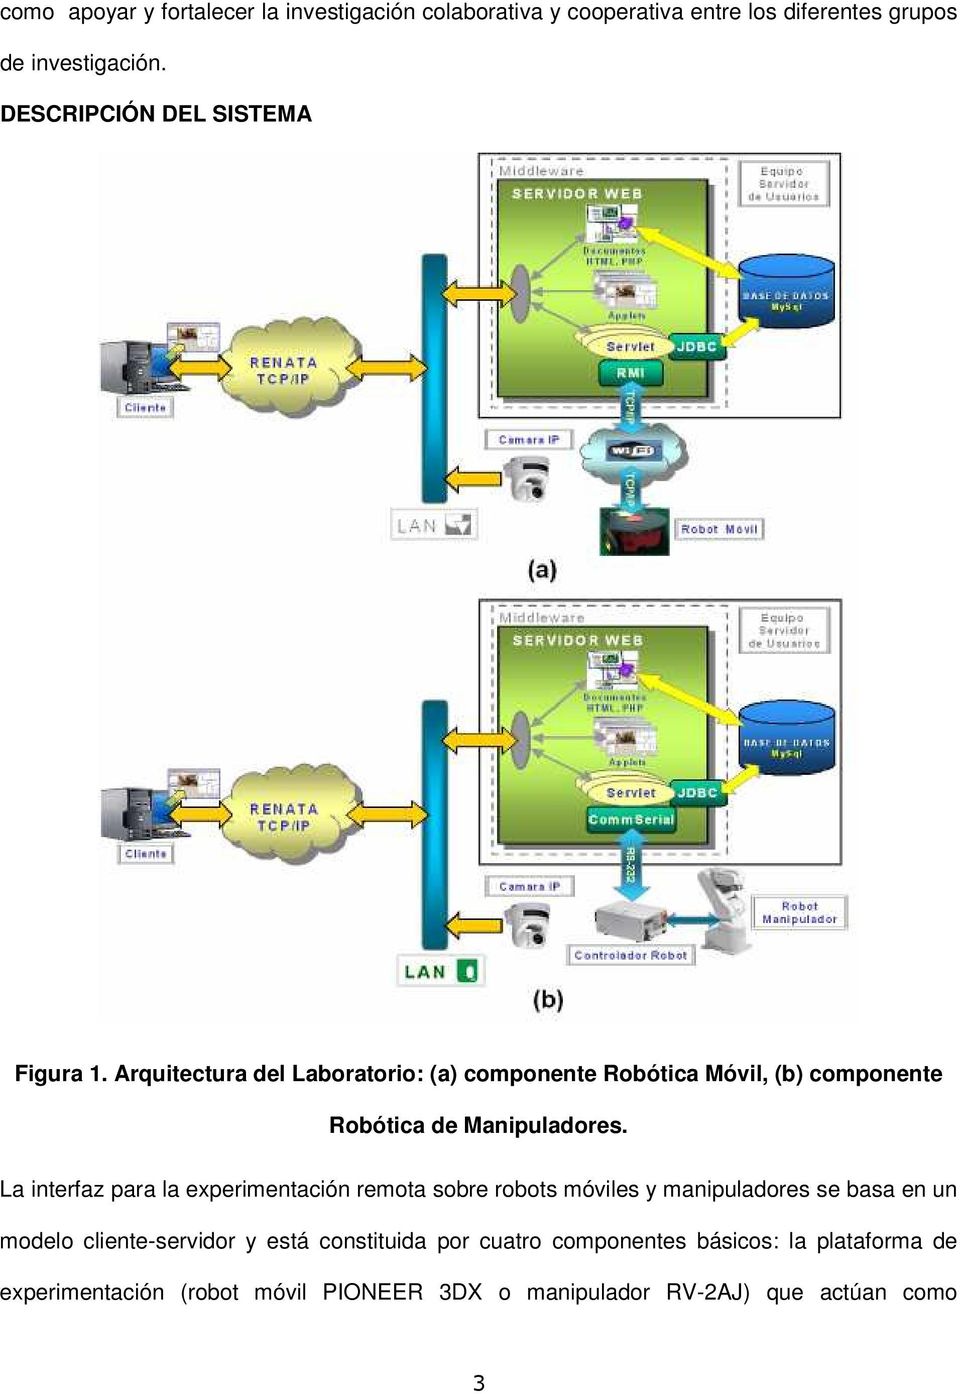 Arquitectura del Laboratorio: (a) componente Robótica Móvil, (b) componente Robótica de Manipuladores.